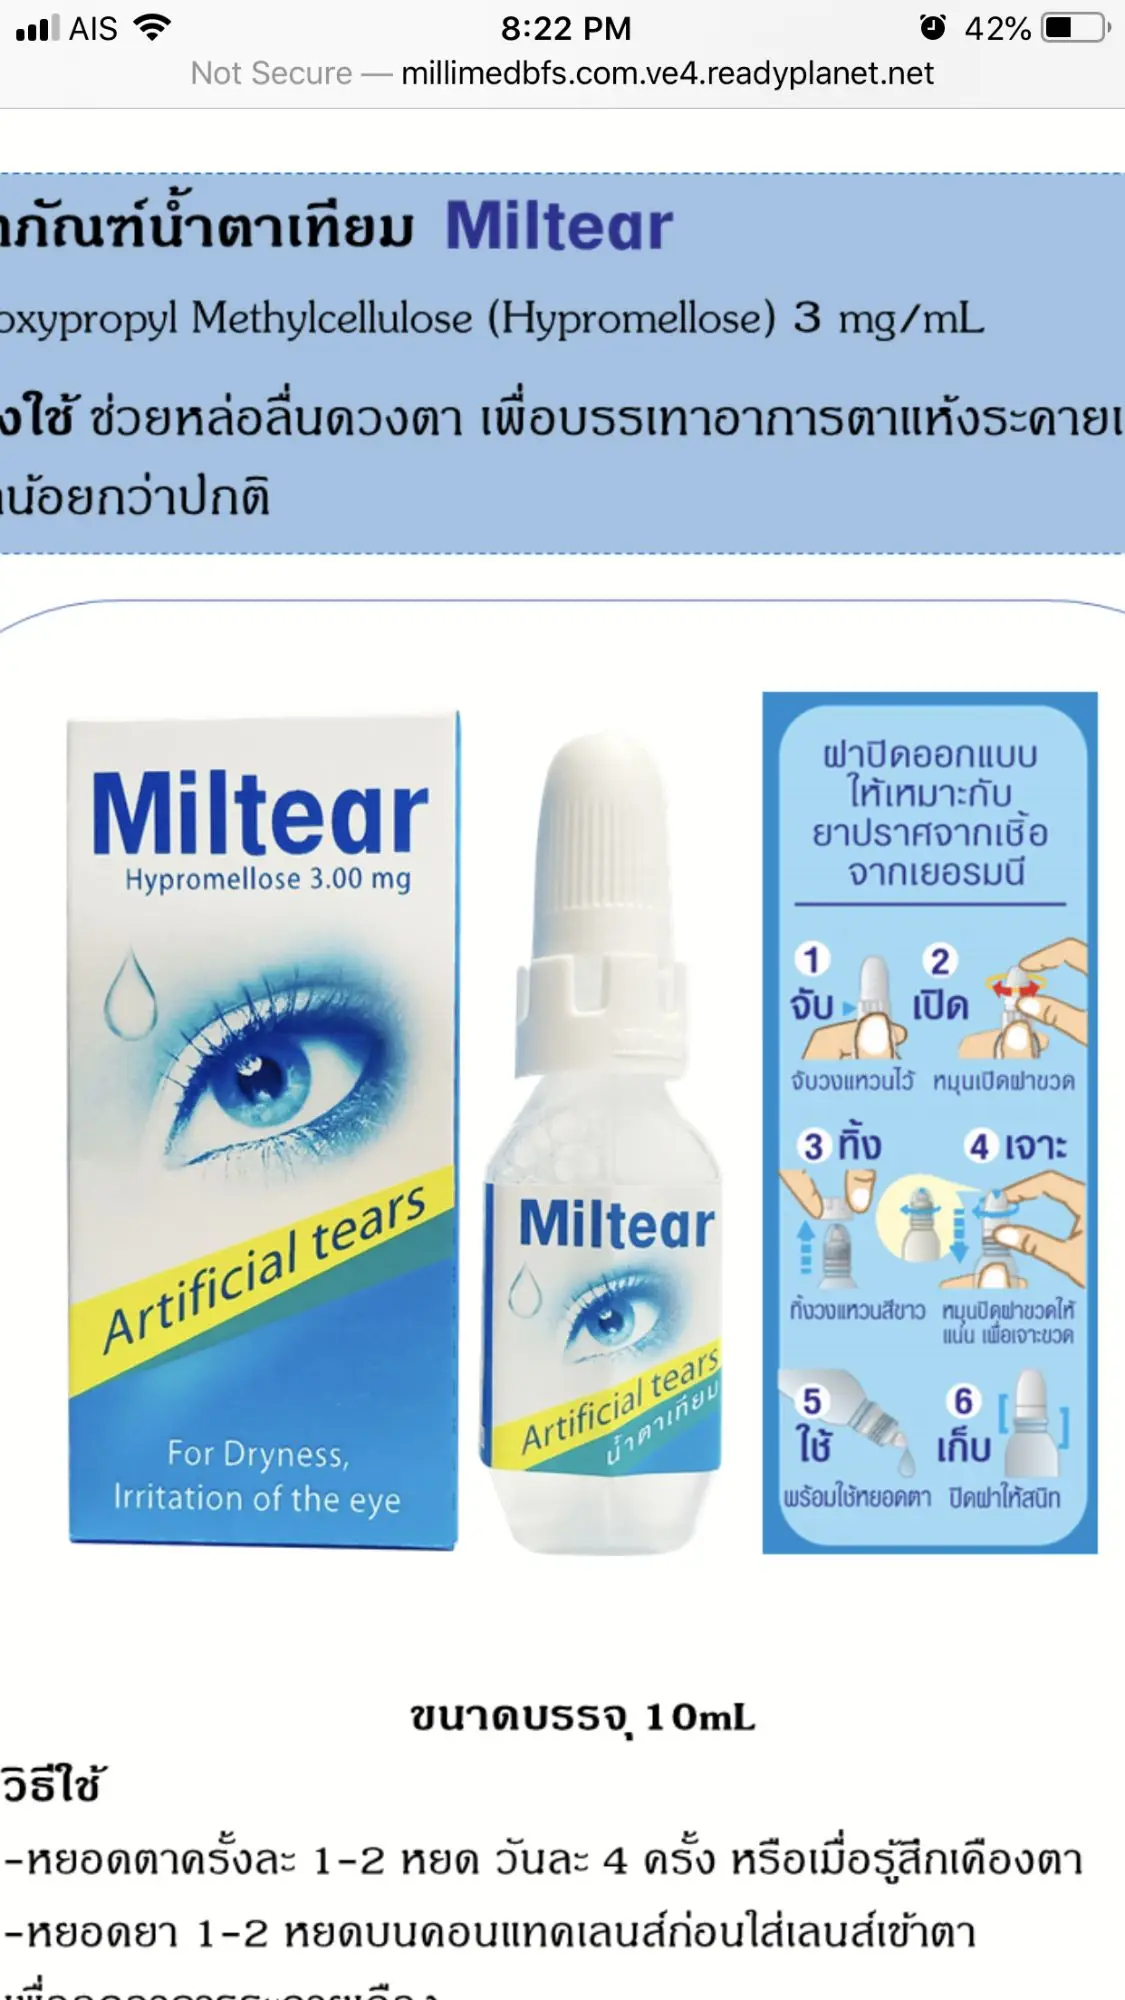 มิว เทีย น้ำตา-เทีย mil tear 10 ml รุ่นขวด อายุยาว